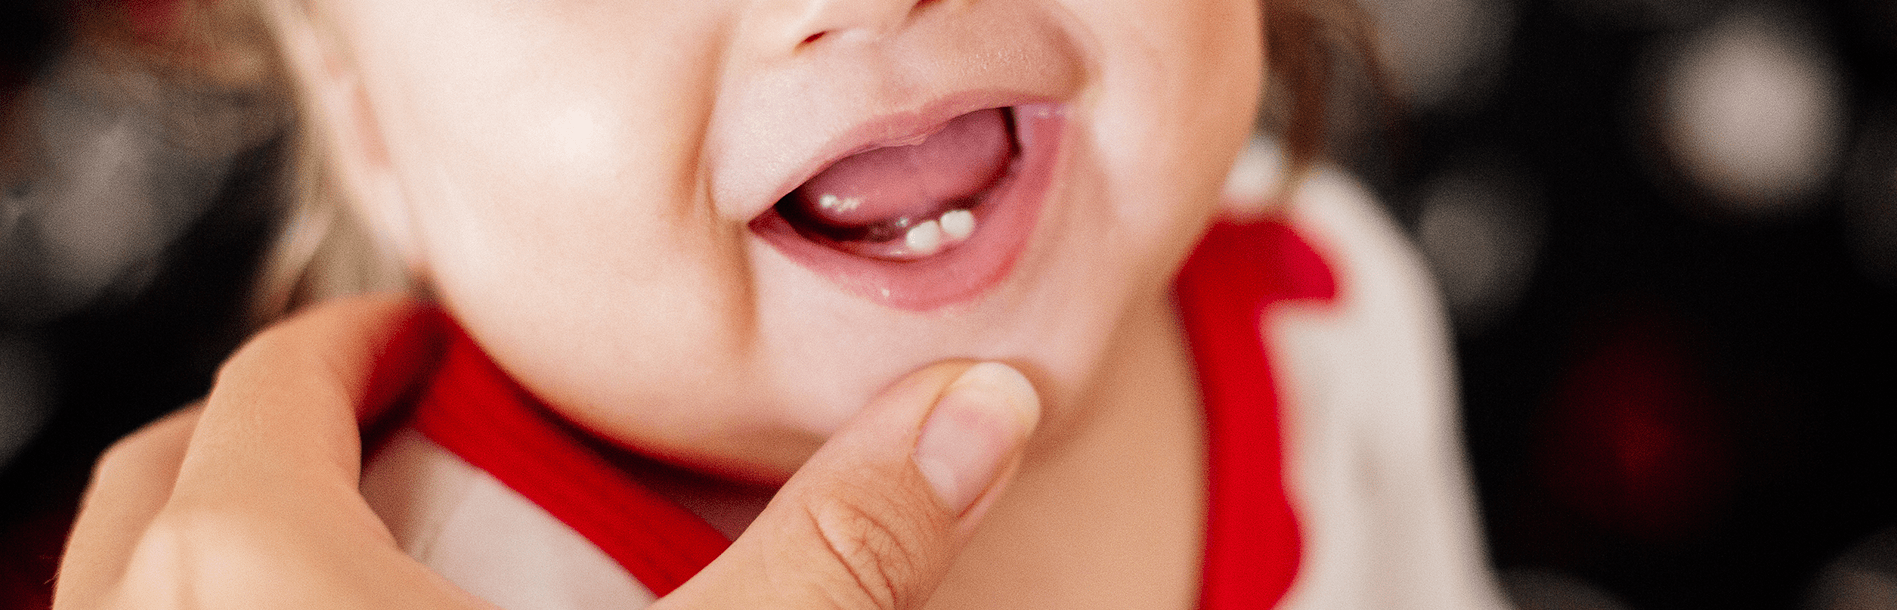 Quando nascem os primeiros dentinhos?